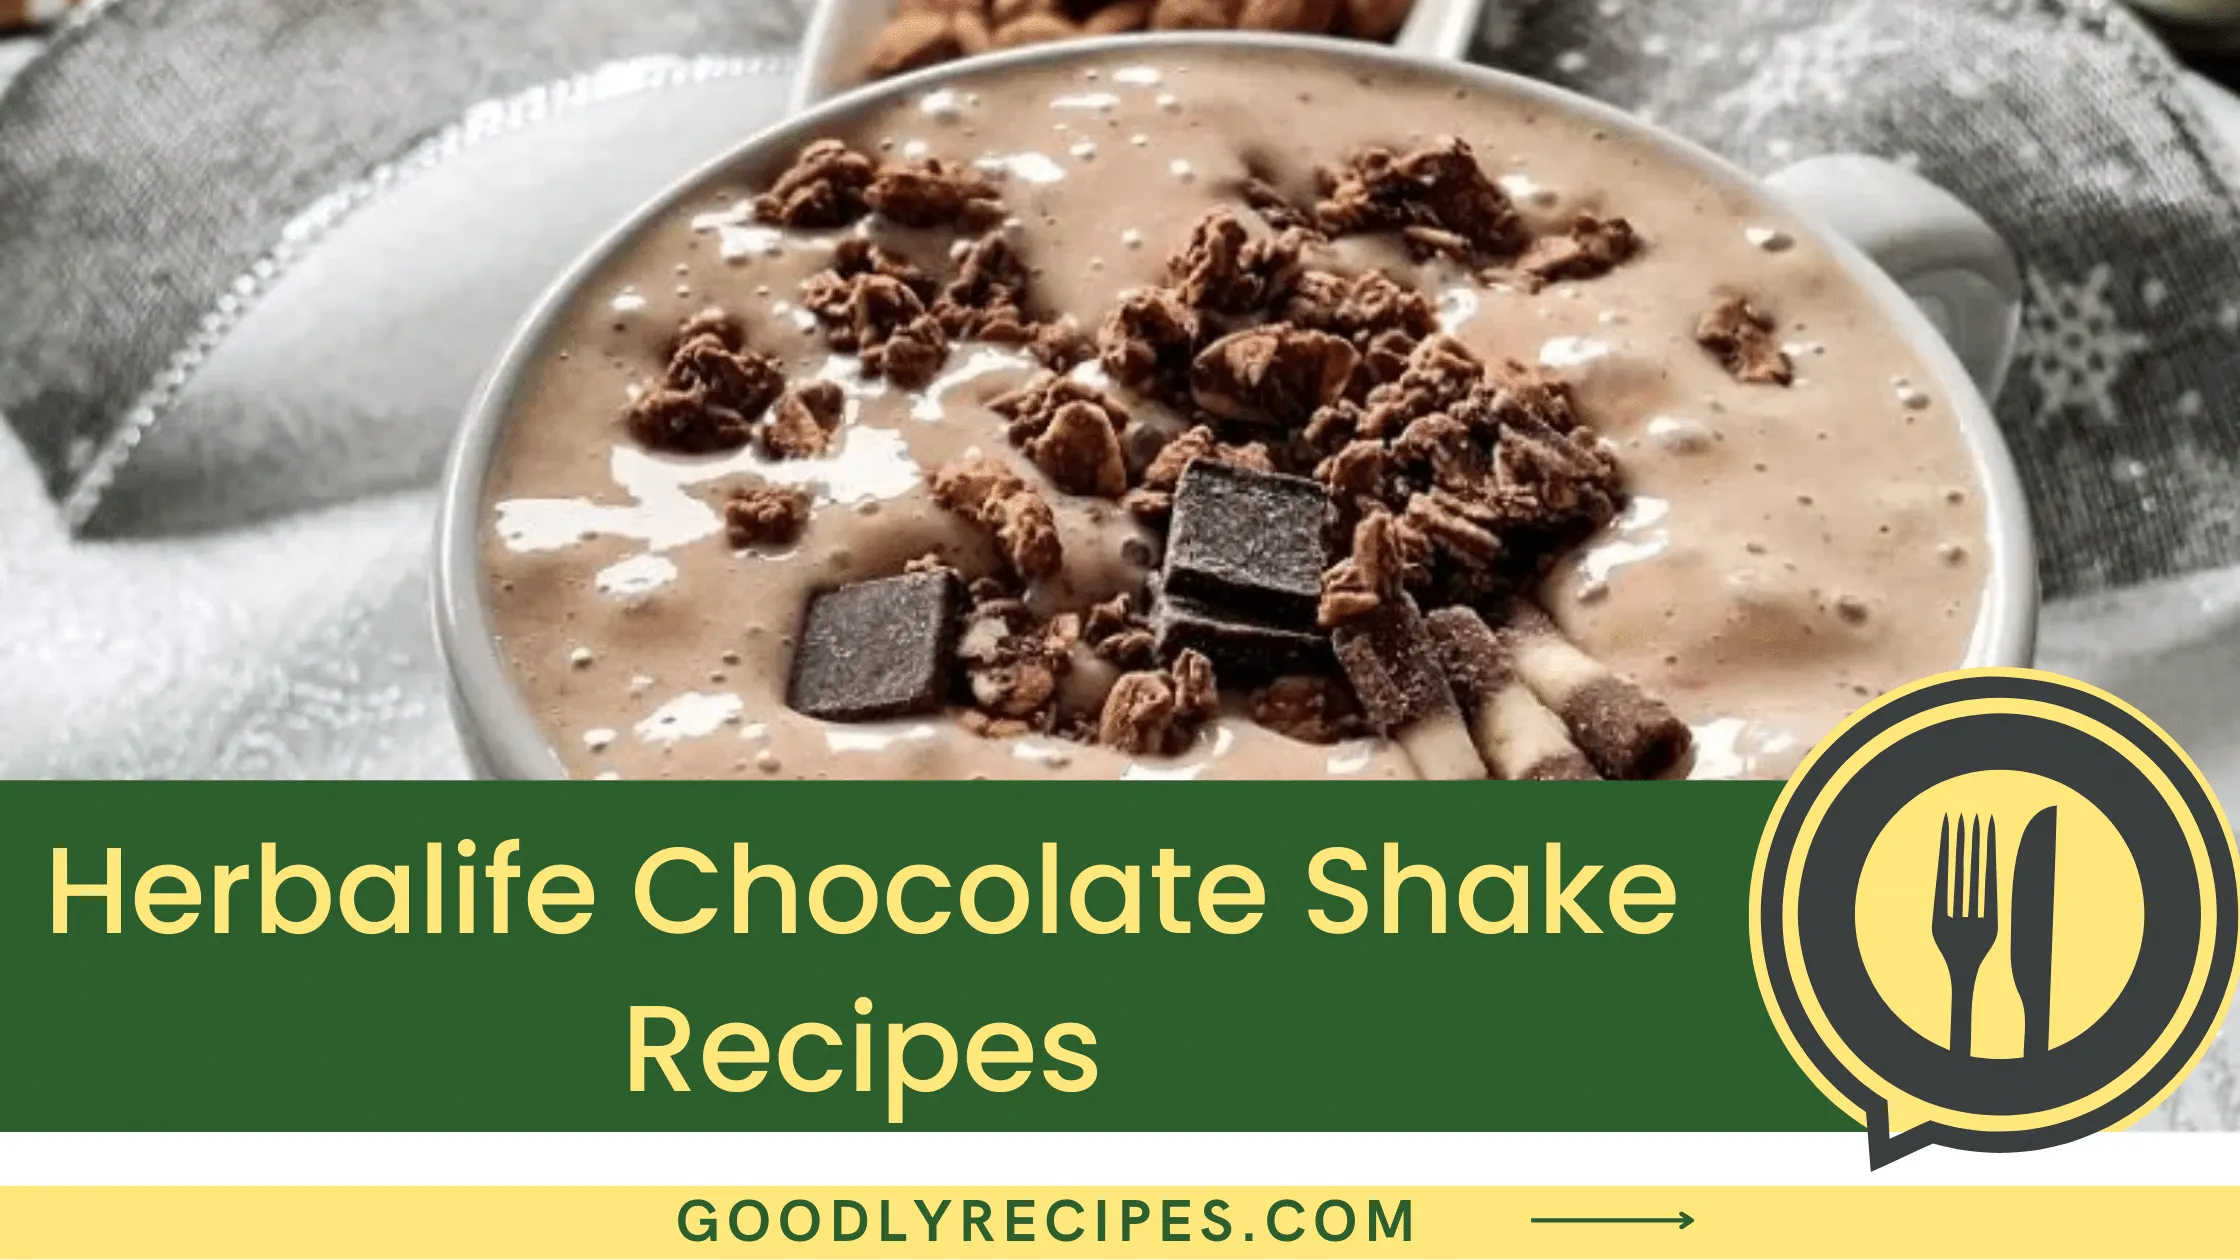 Herbalife Chocolate Shake Recipe